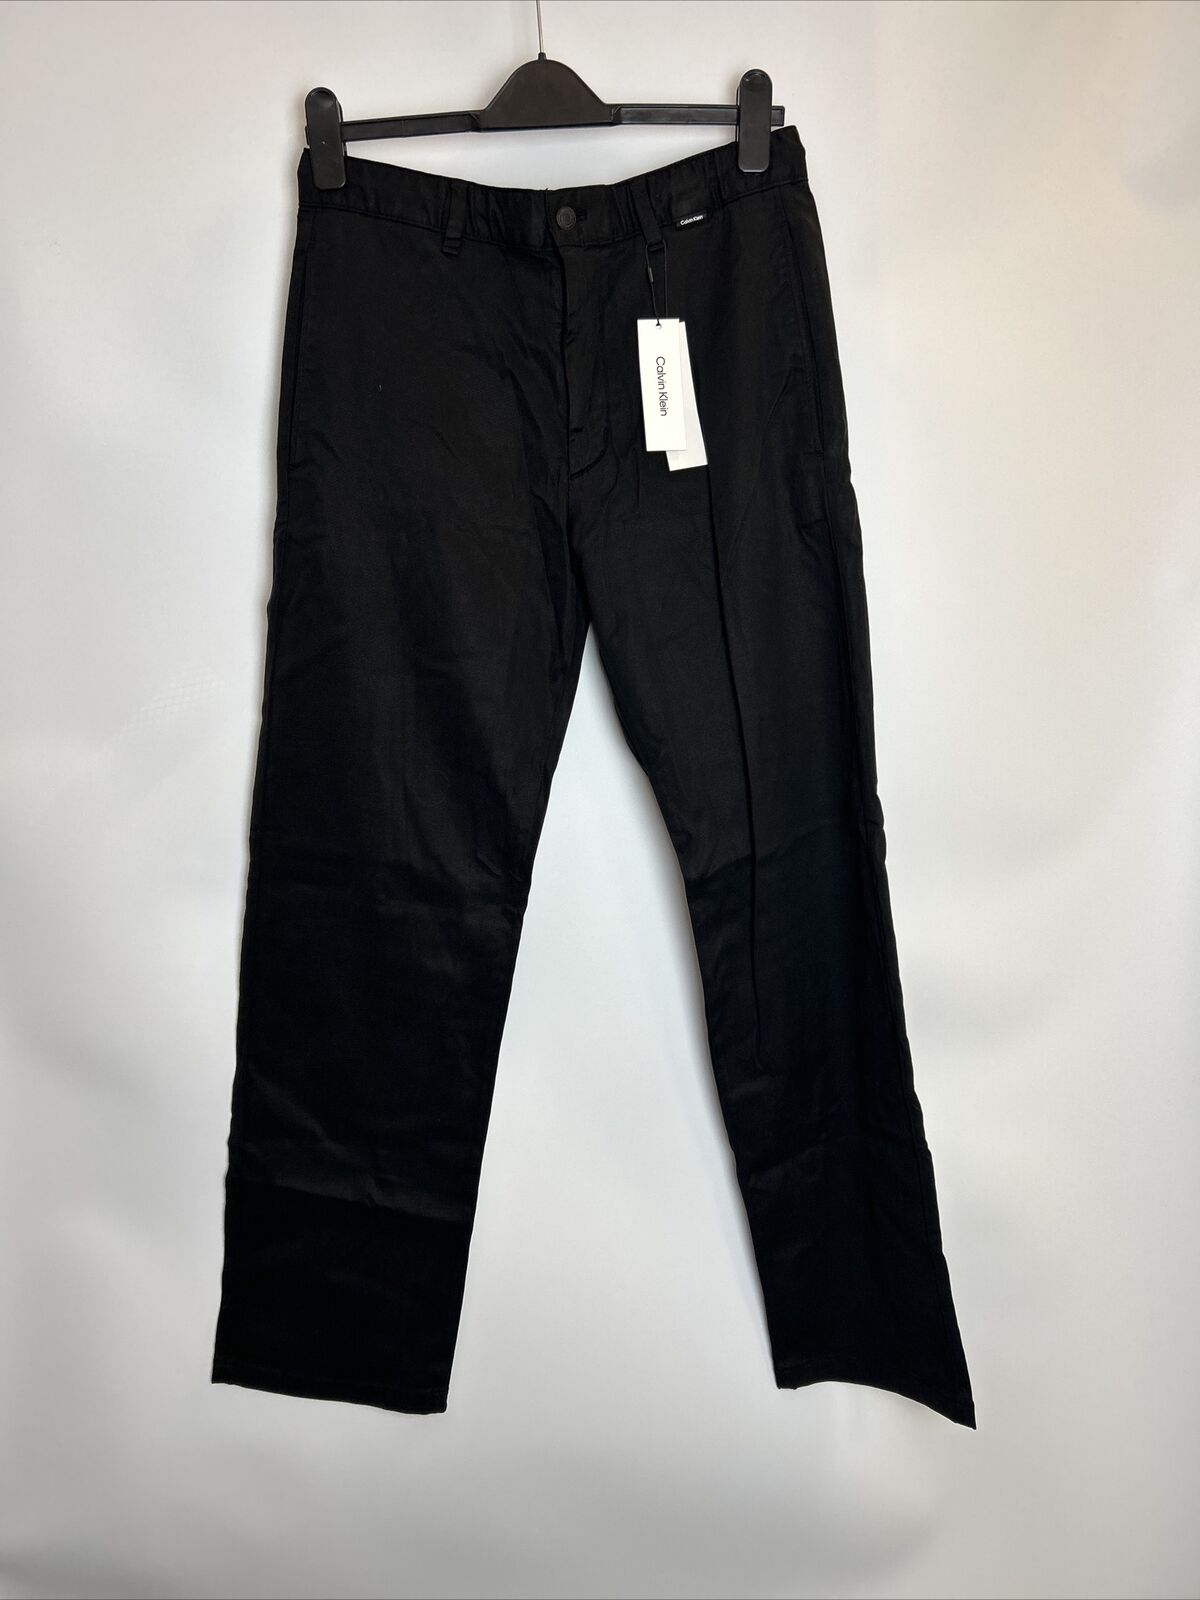 Calvin Klein Men's Jeans. Size Large ****Ref V58